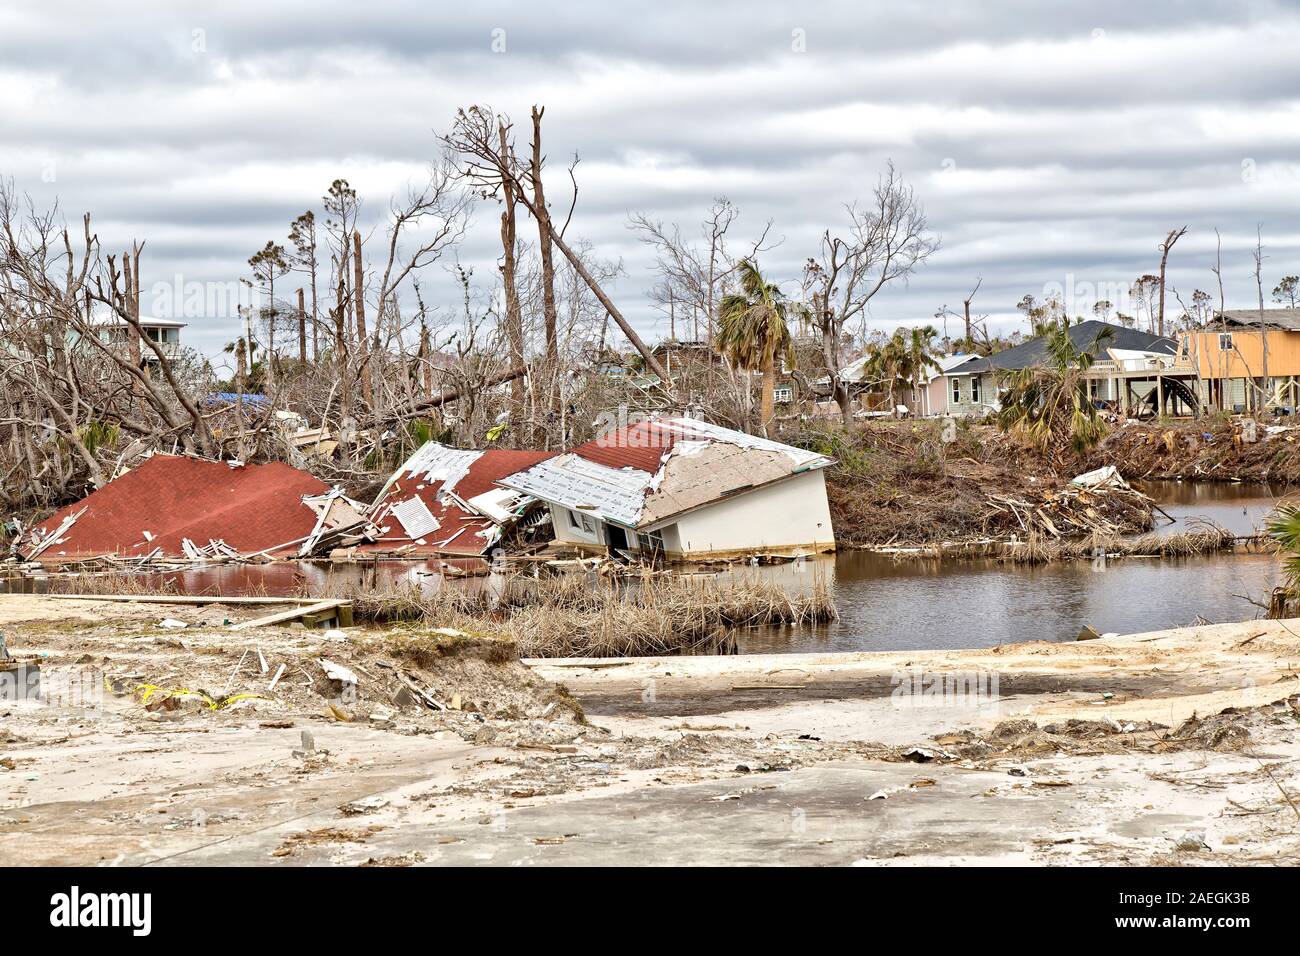 Der Hurrikan 'Michael' 2018 Zerstörung, Wohnungen, Wasserstraße, Flora, in der nähe von Mexico Beach, Florida Panhandle. Stockfoto